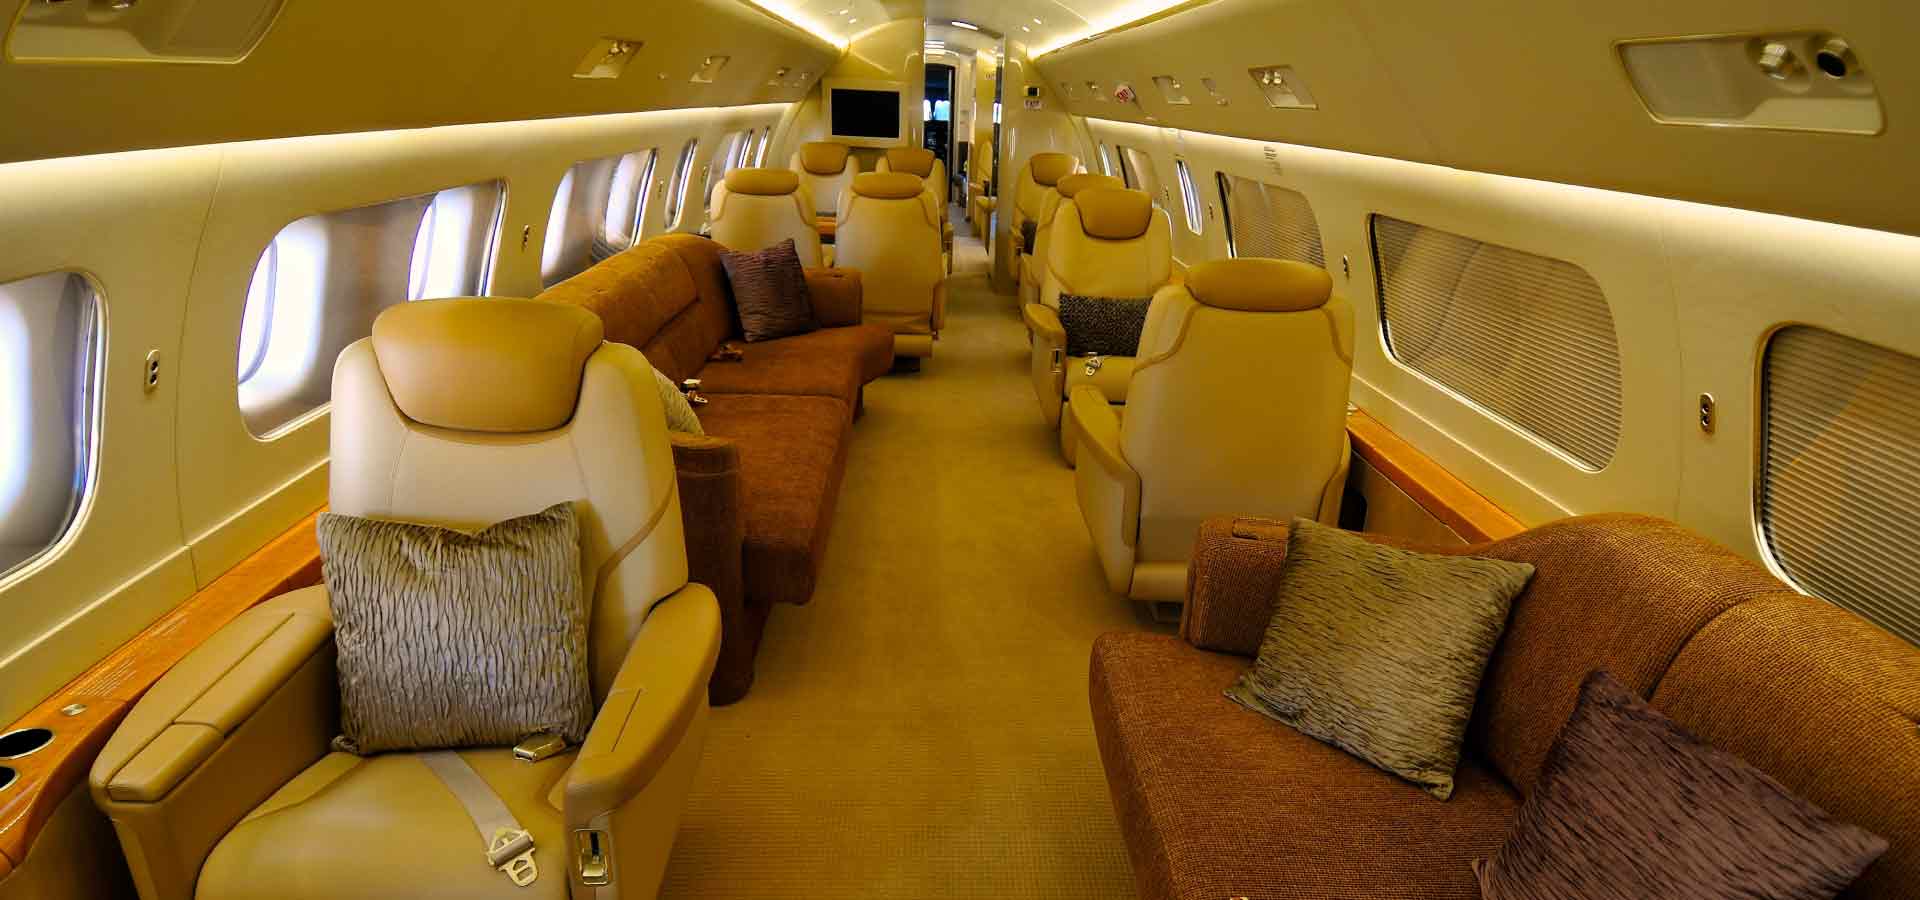 Private jet interior